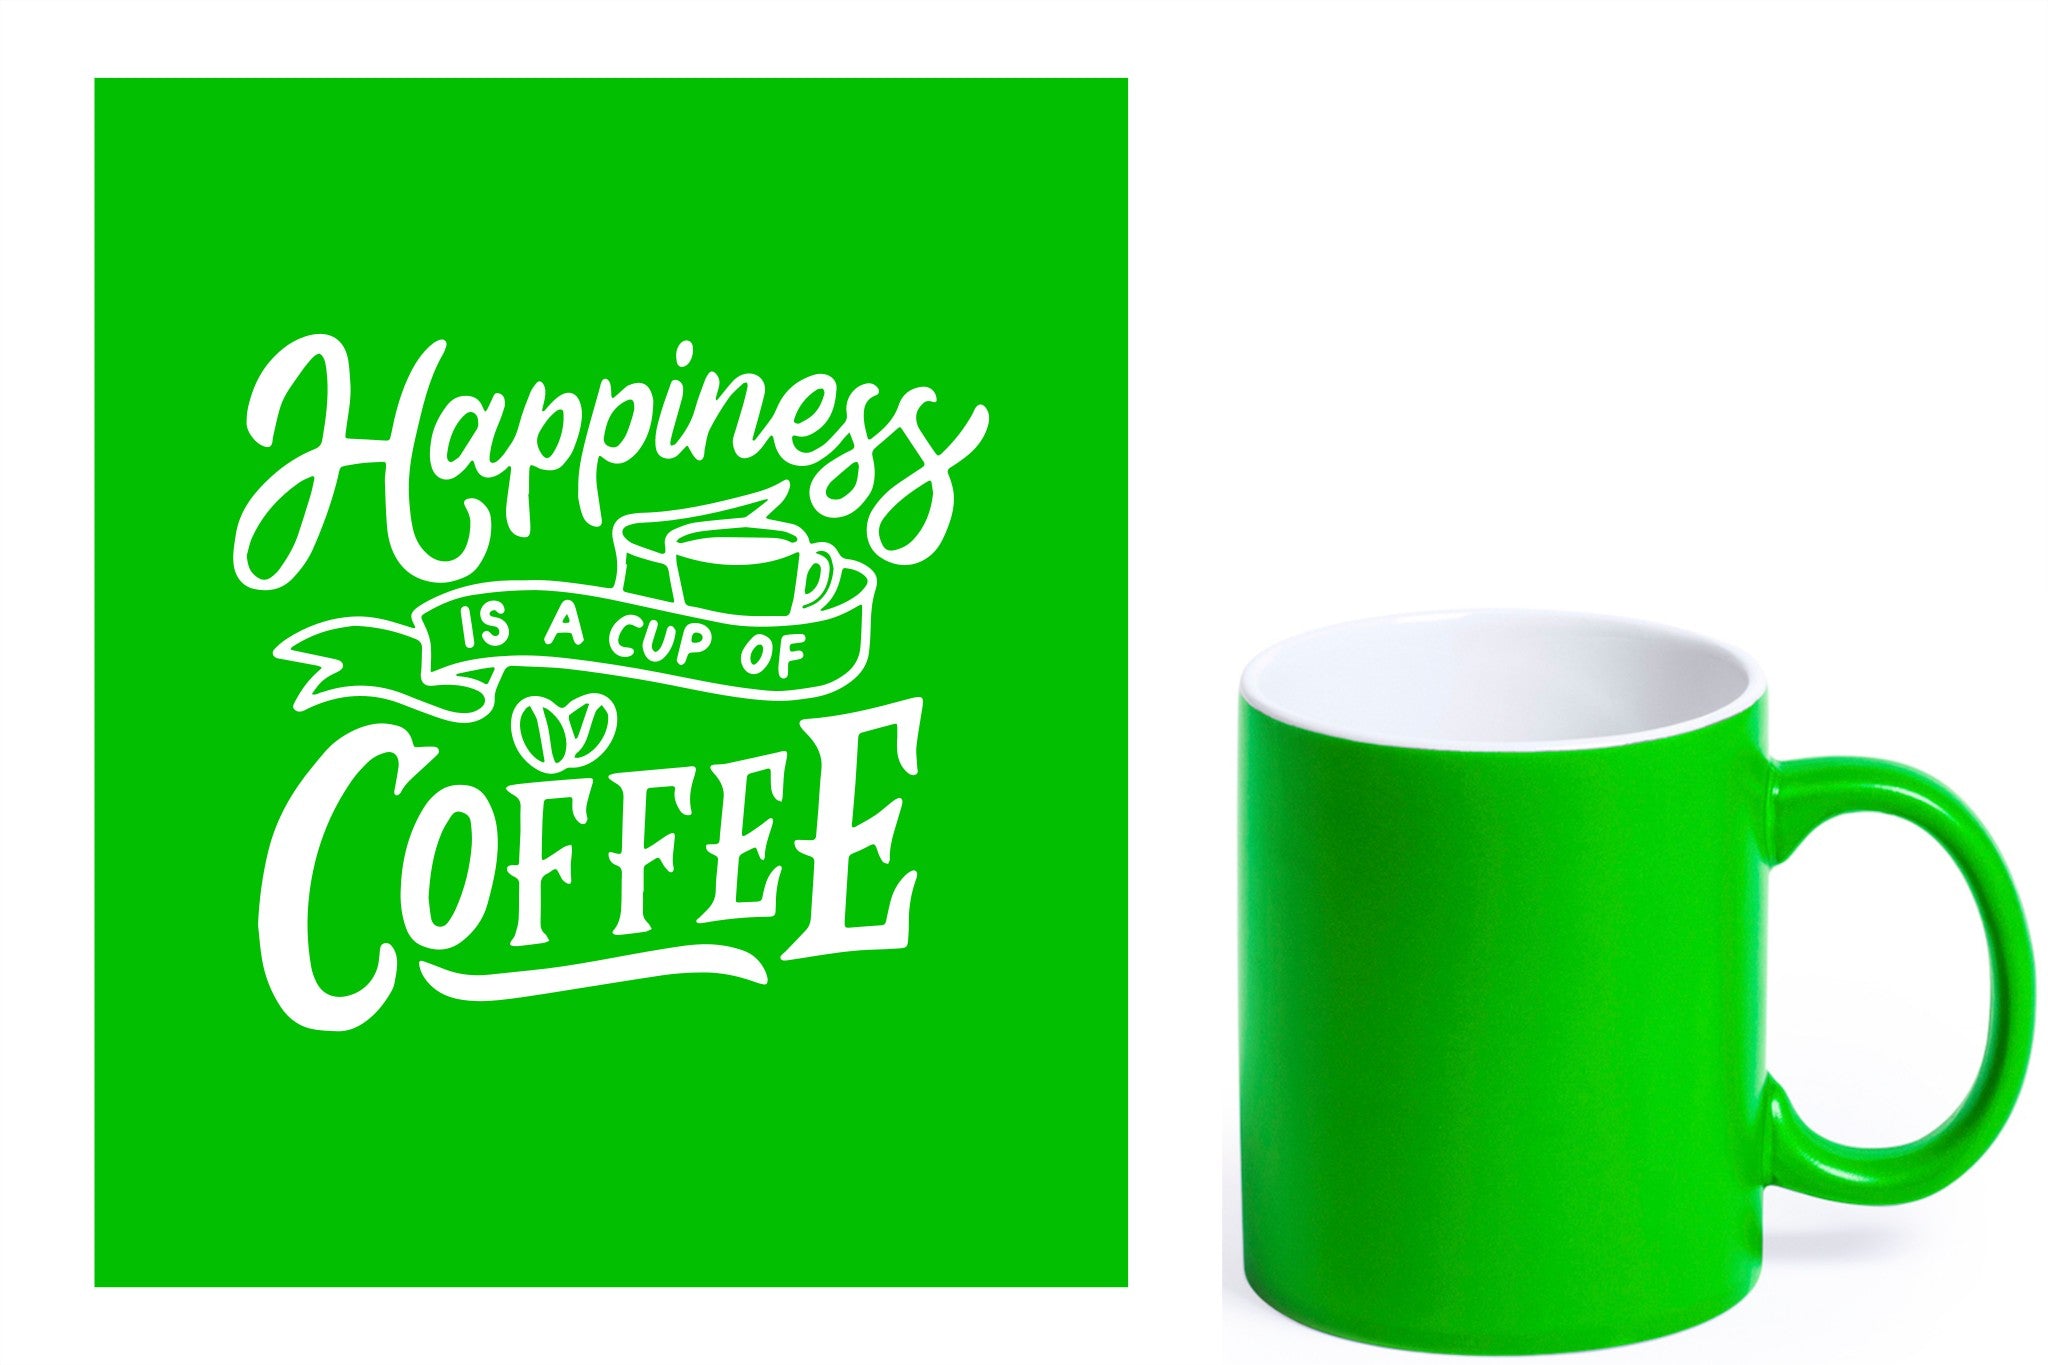 groene keramische mok met witte gravure  'Happiness is a cup of coffee'.